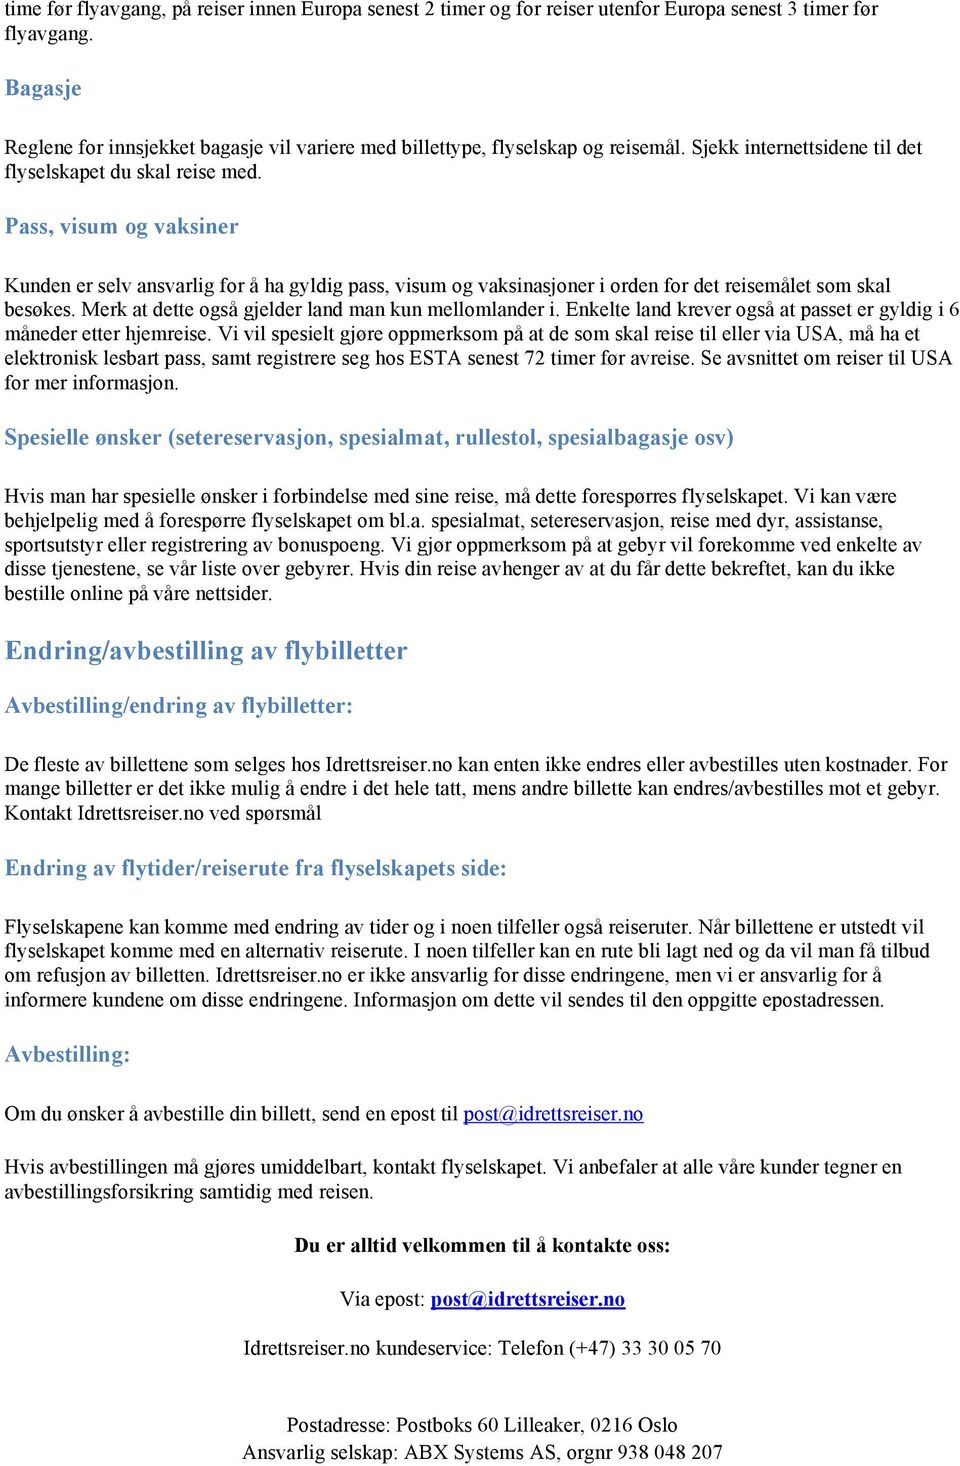 Reisevilkår for bestilling hos Idrettsreiser.no Innhold - PDF Free Download